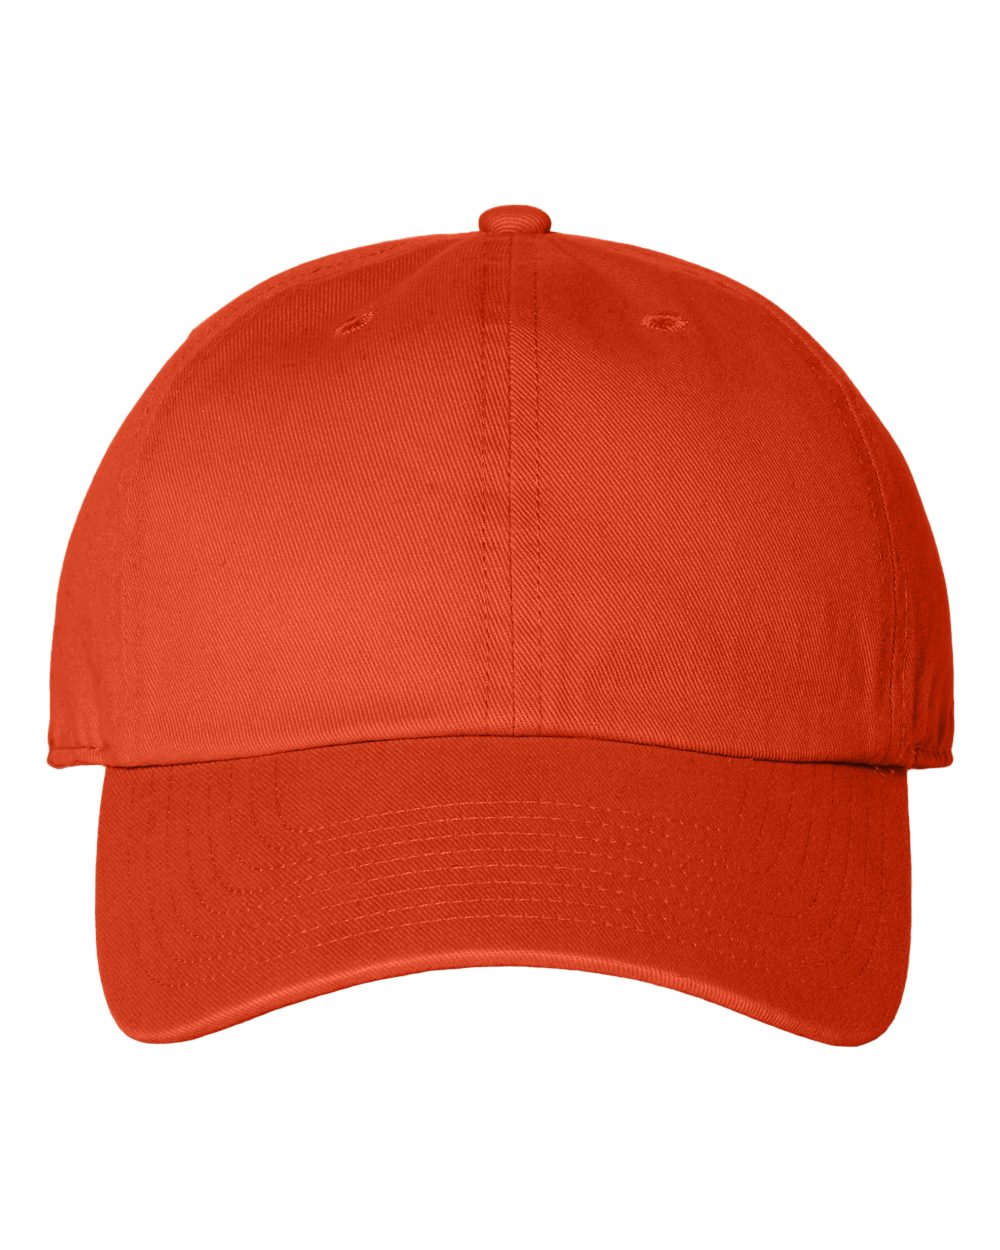 47 Brand 4700 Clean Up Cap - Orange - One Size